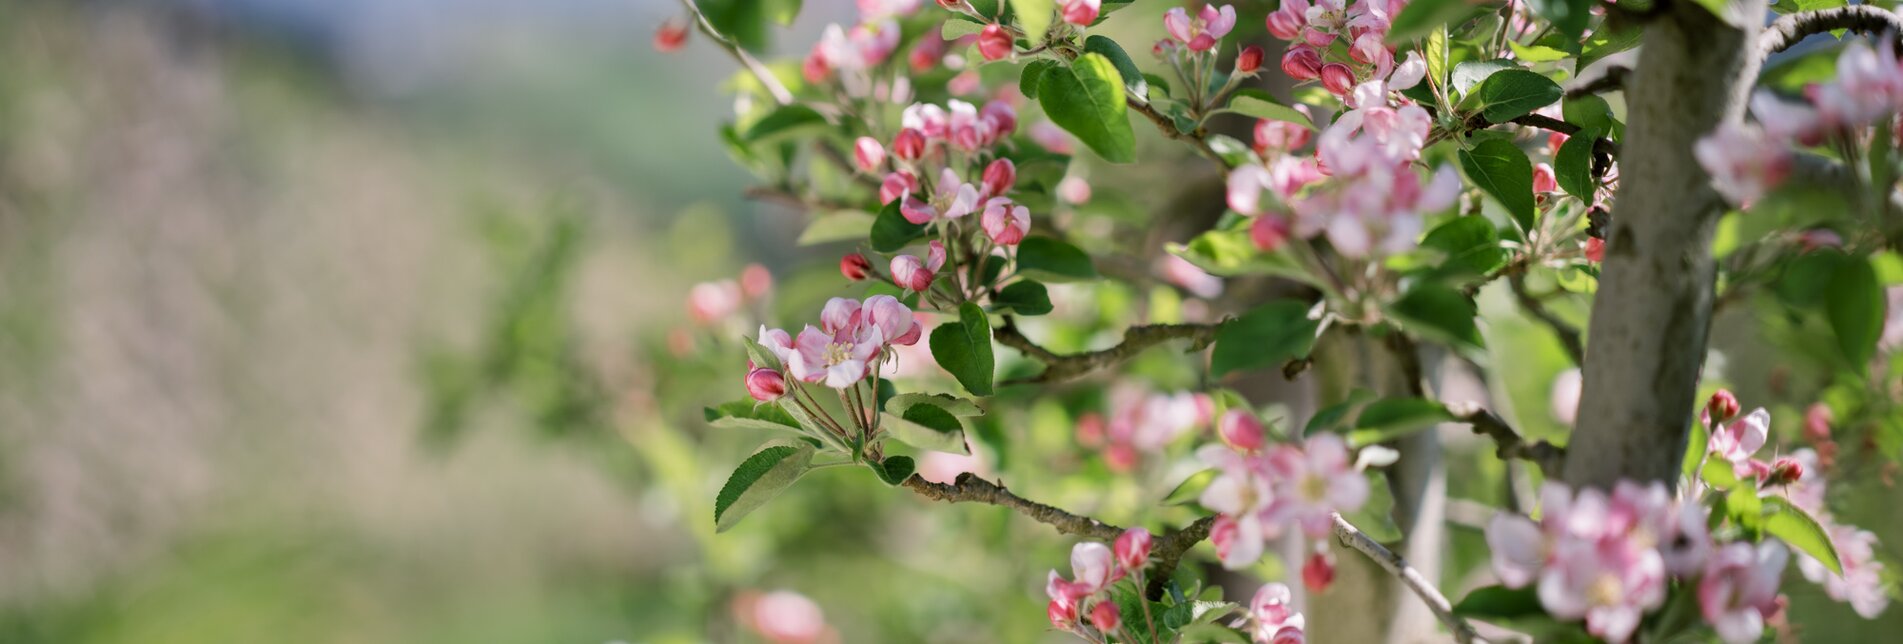 Flowering apple tree in apple orchard in the Eastern Styria | © TV Oststeiermark | die mosbachers